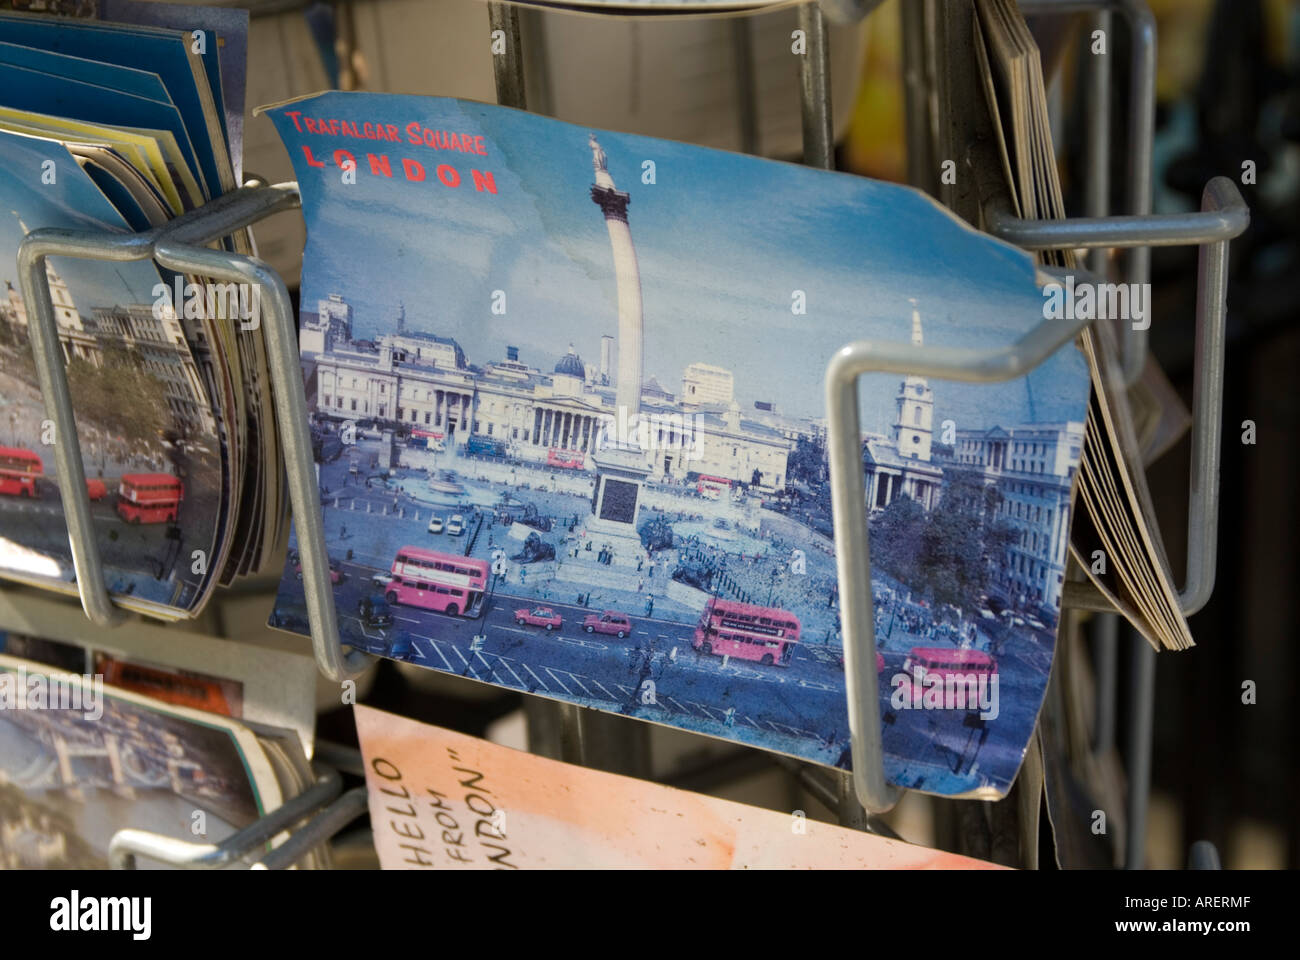 S'est évanoui tatty carte postale de Trafalgar Square à Londres Angleterre Royaume-uni rack Banque D'Images